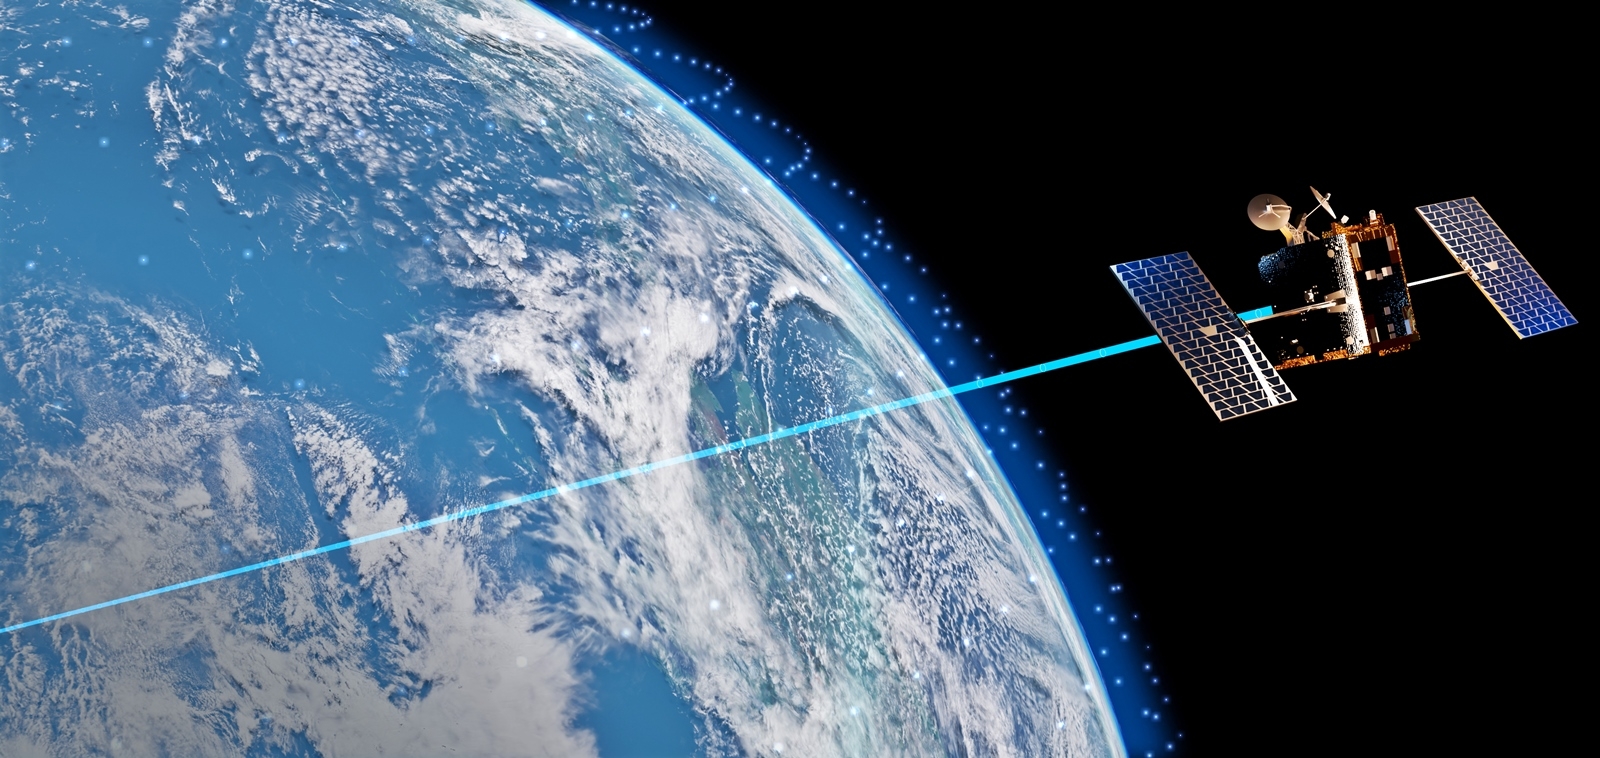 원웹의 위성망을 활용한 한화시스템 ′저궤도 위성통신 네트워크′ 가상도. 한화시스템 제공